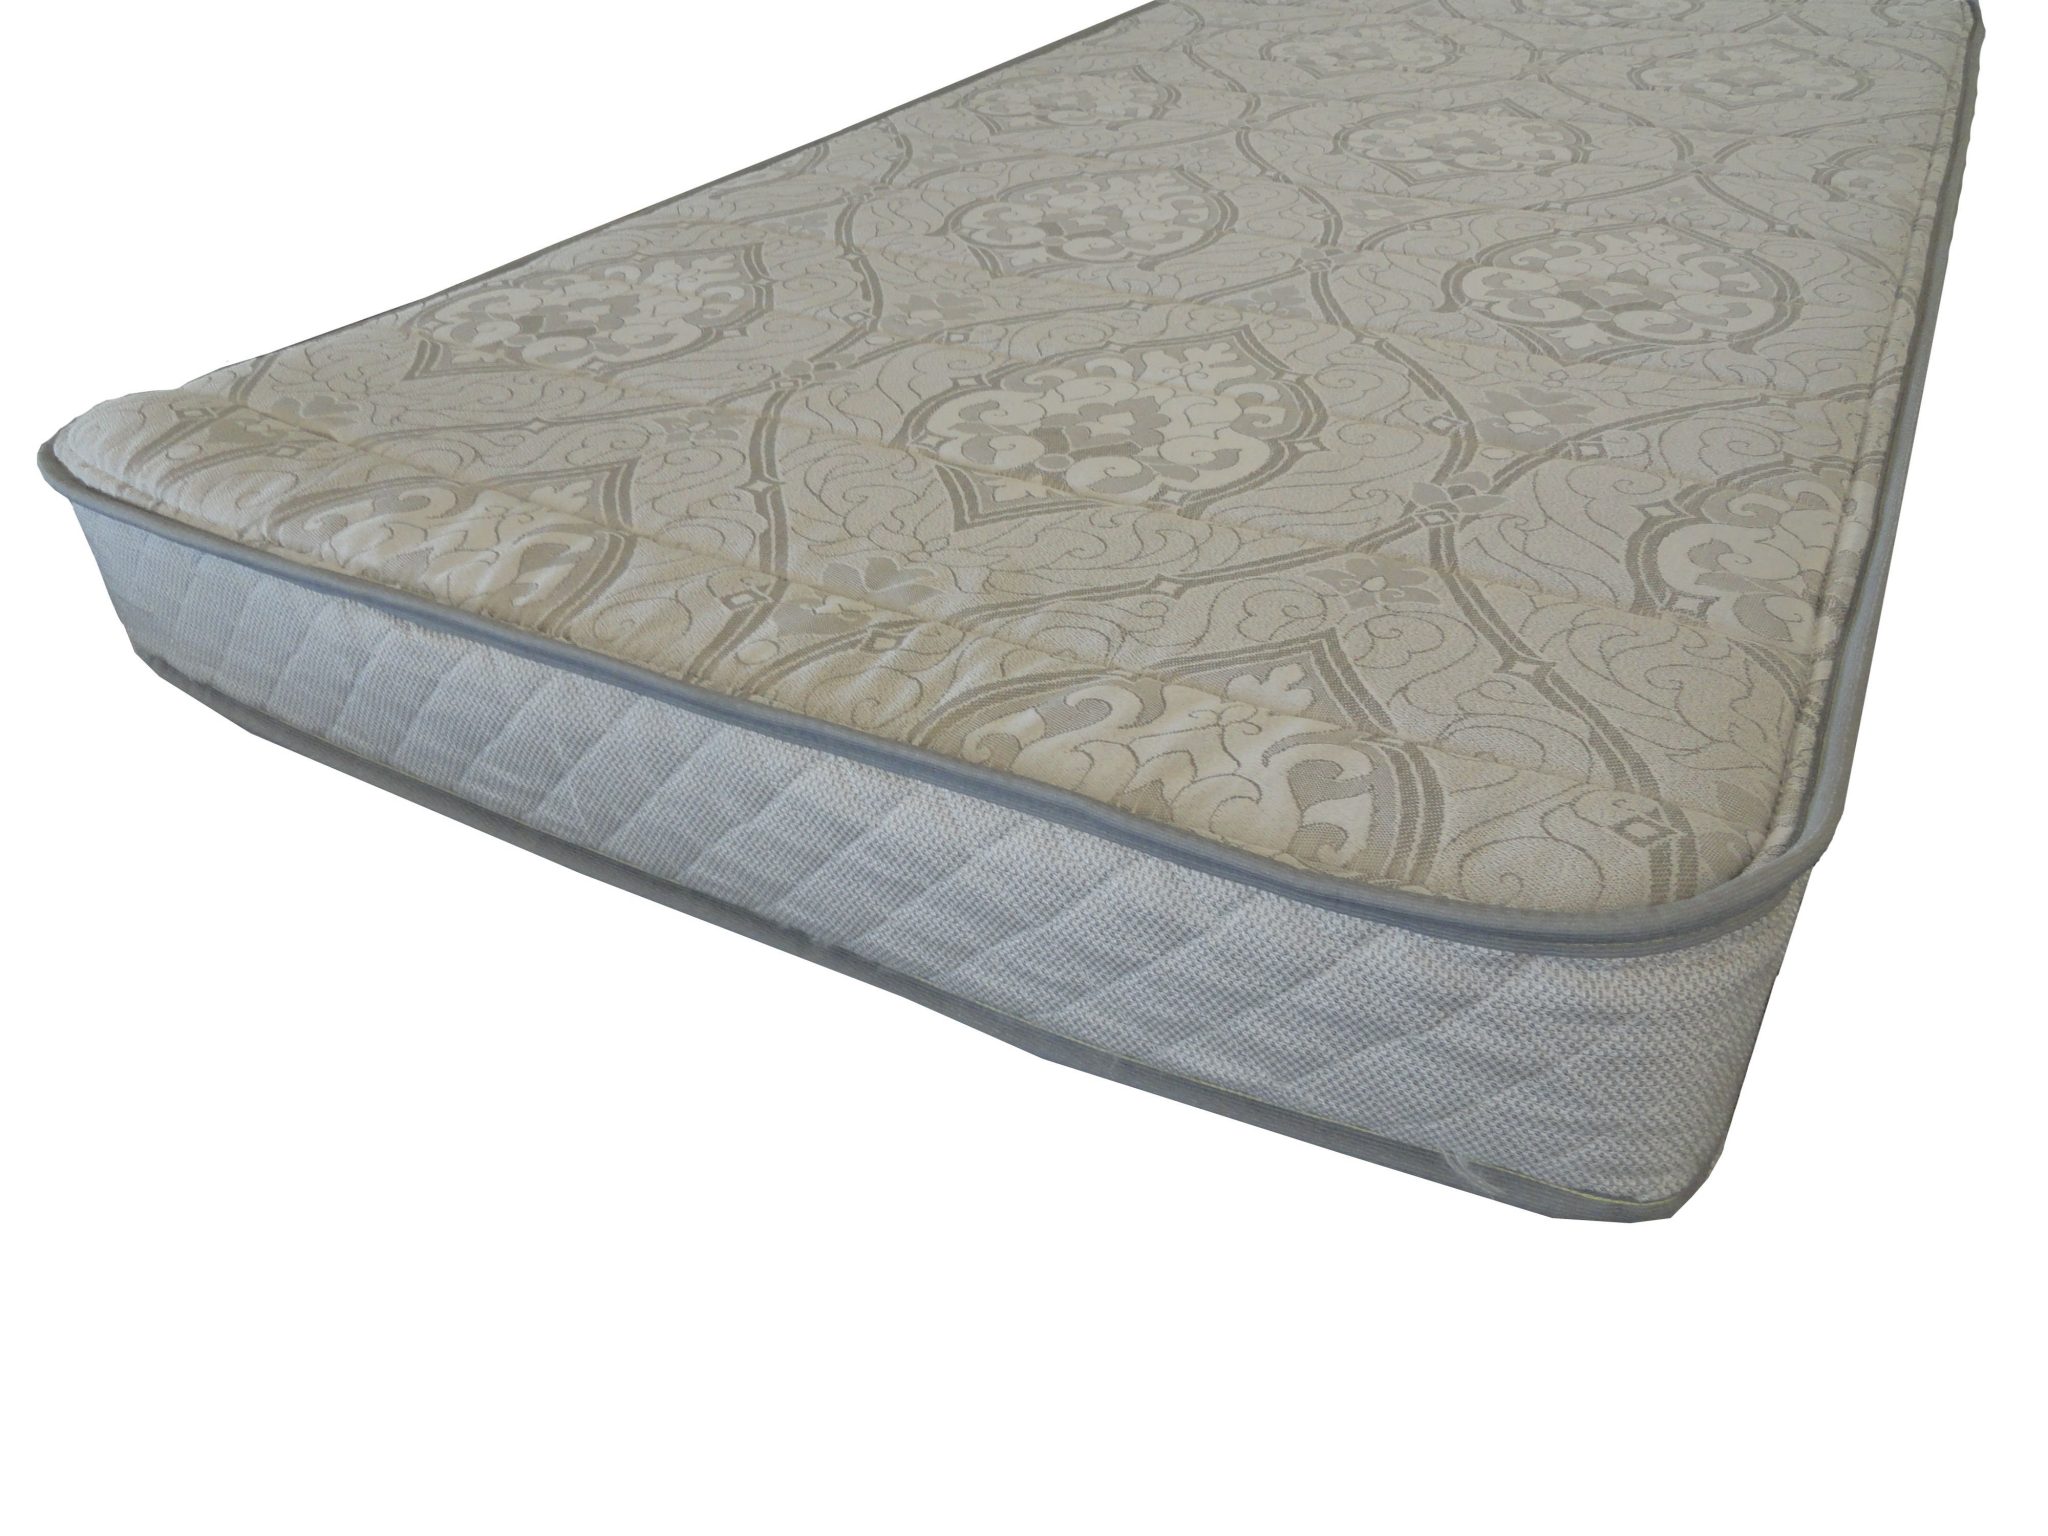 quilt for twin air mattress